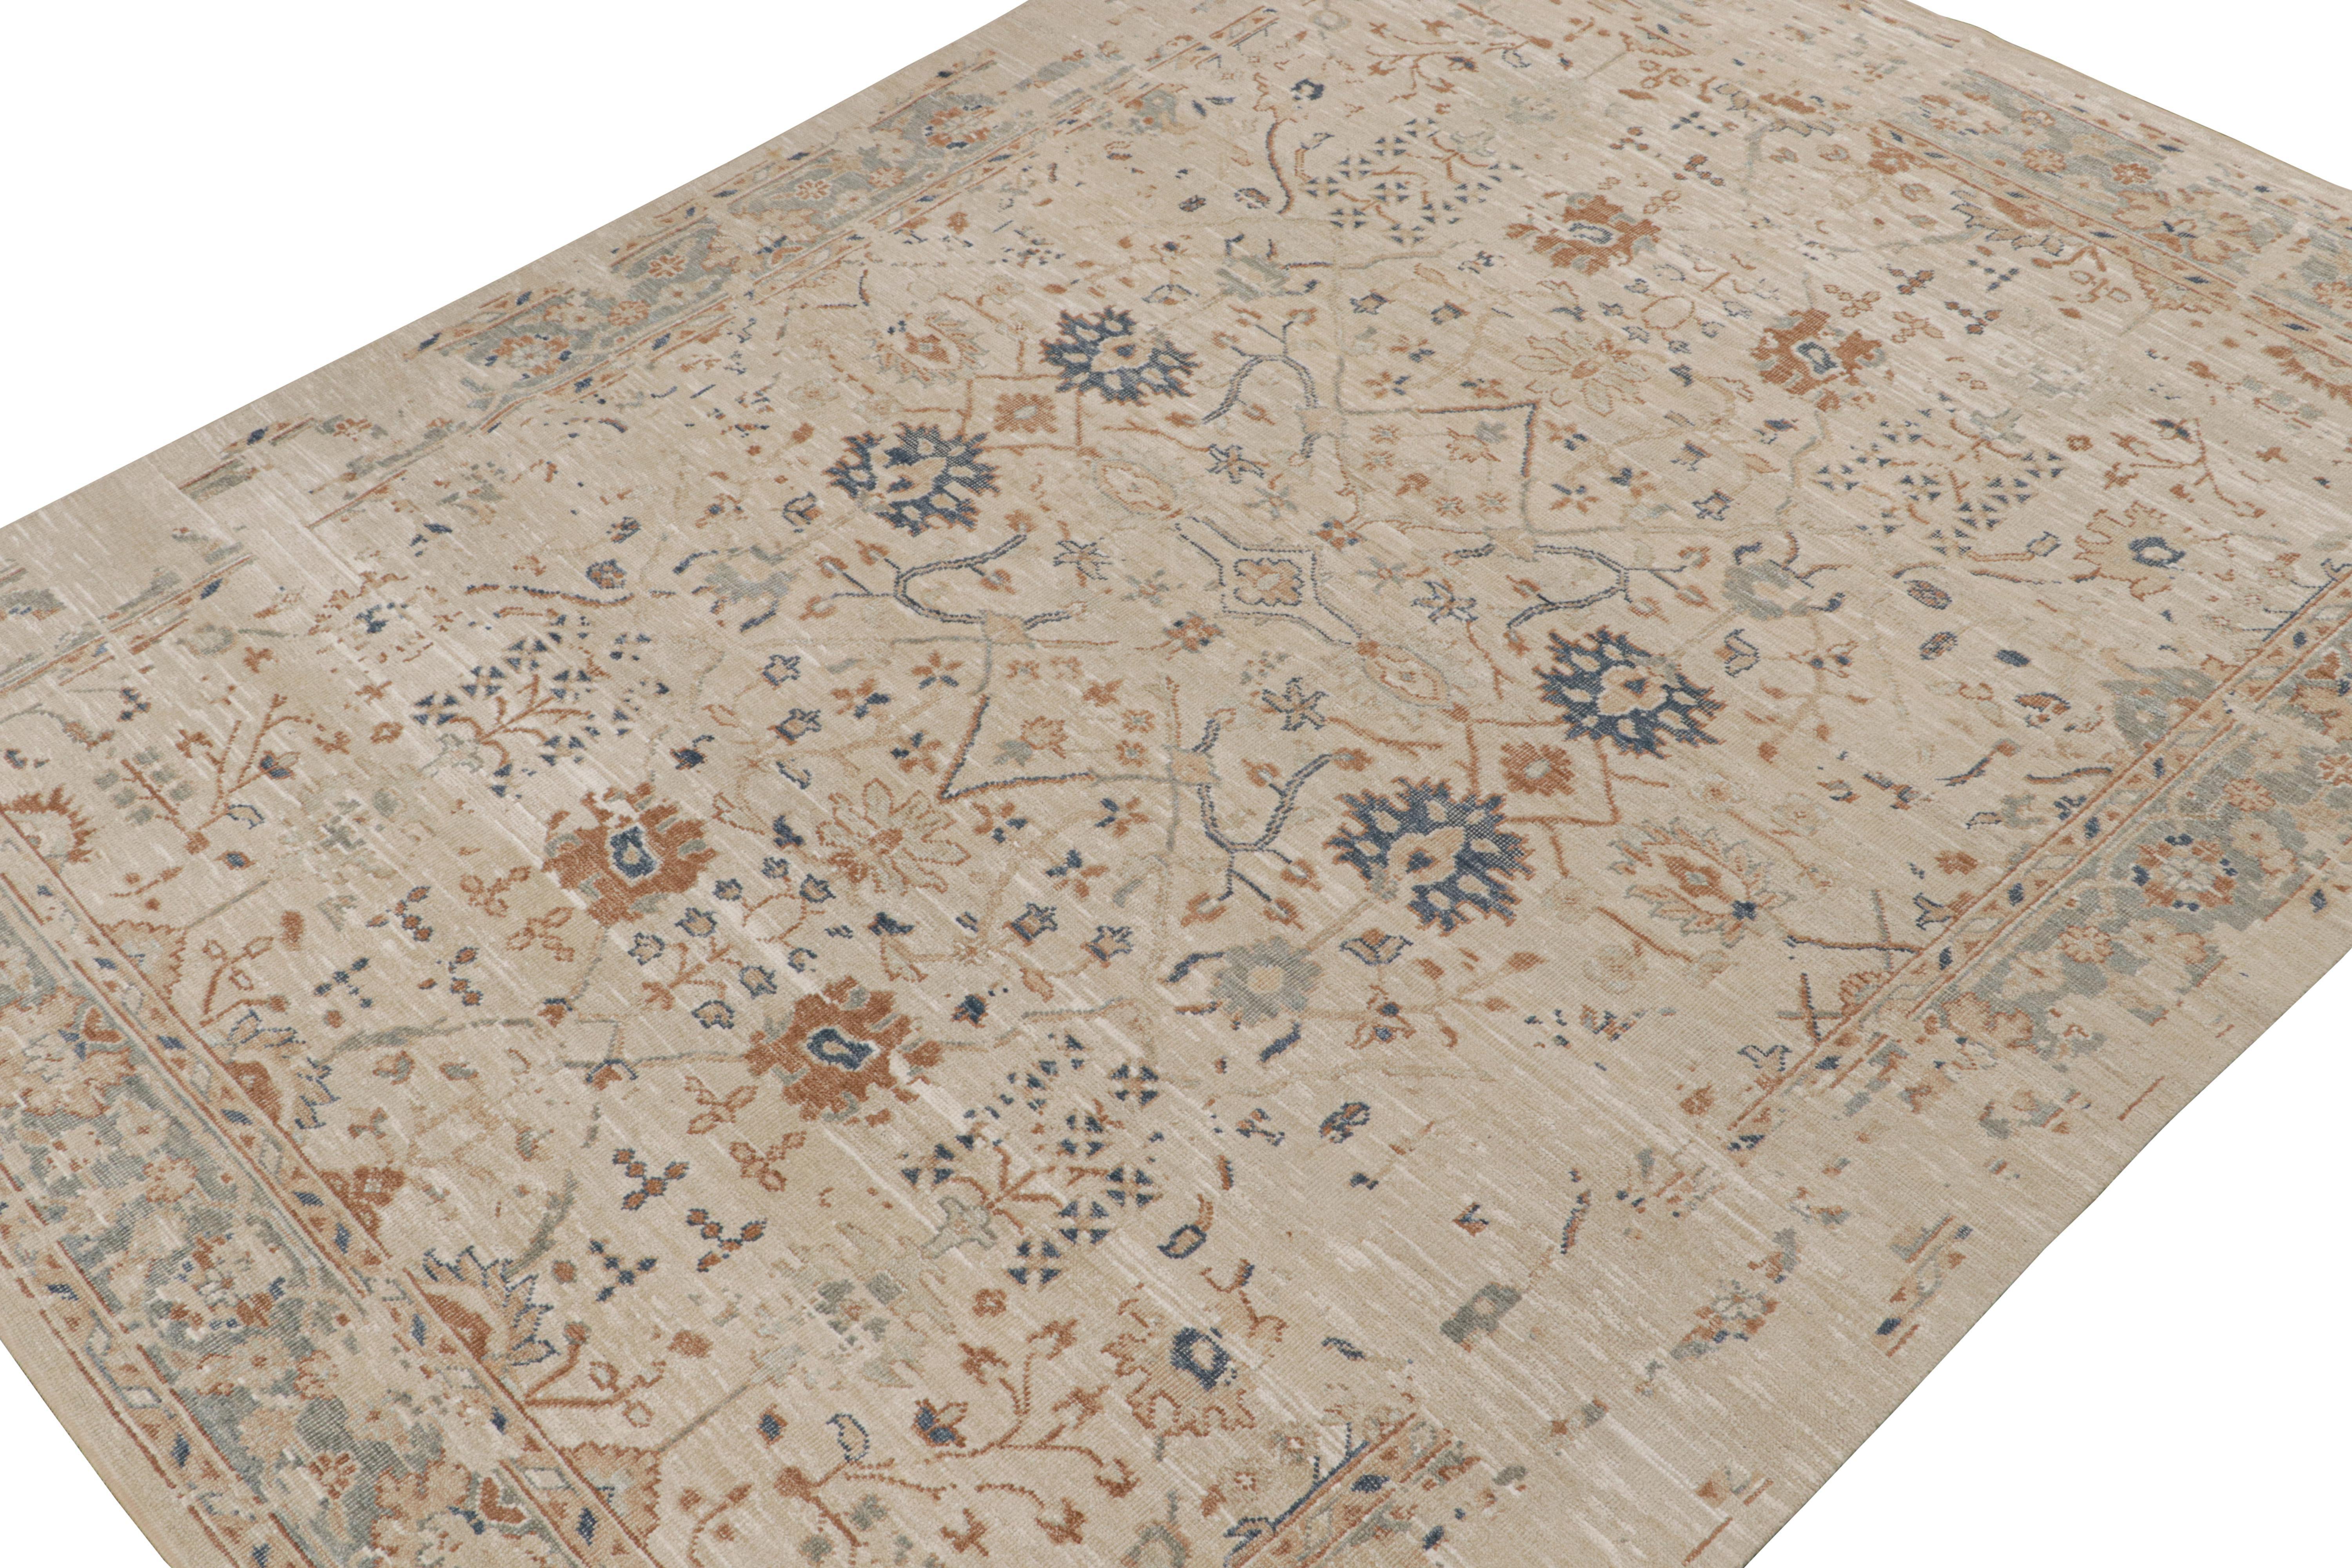 Dieser 9x12 große Teppich ist von antiken Oushak-Teppichen inspiriert - aus der neuen Modern Classics Collection'S von Rug & Kilim. Der handgeknüpfte Seidenstoff hat taupefarbene und beige-braune Untertöne mit Tribal-Motiven und floralen Mustern in